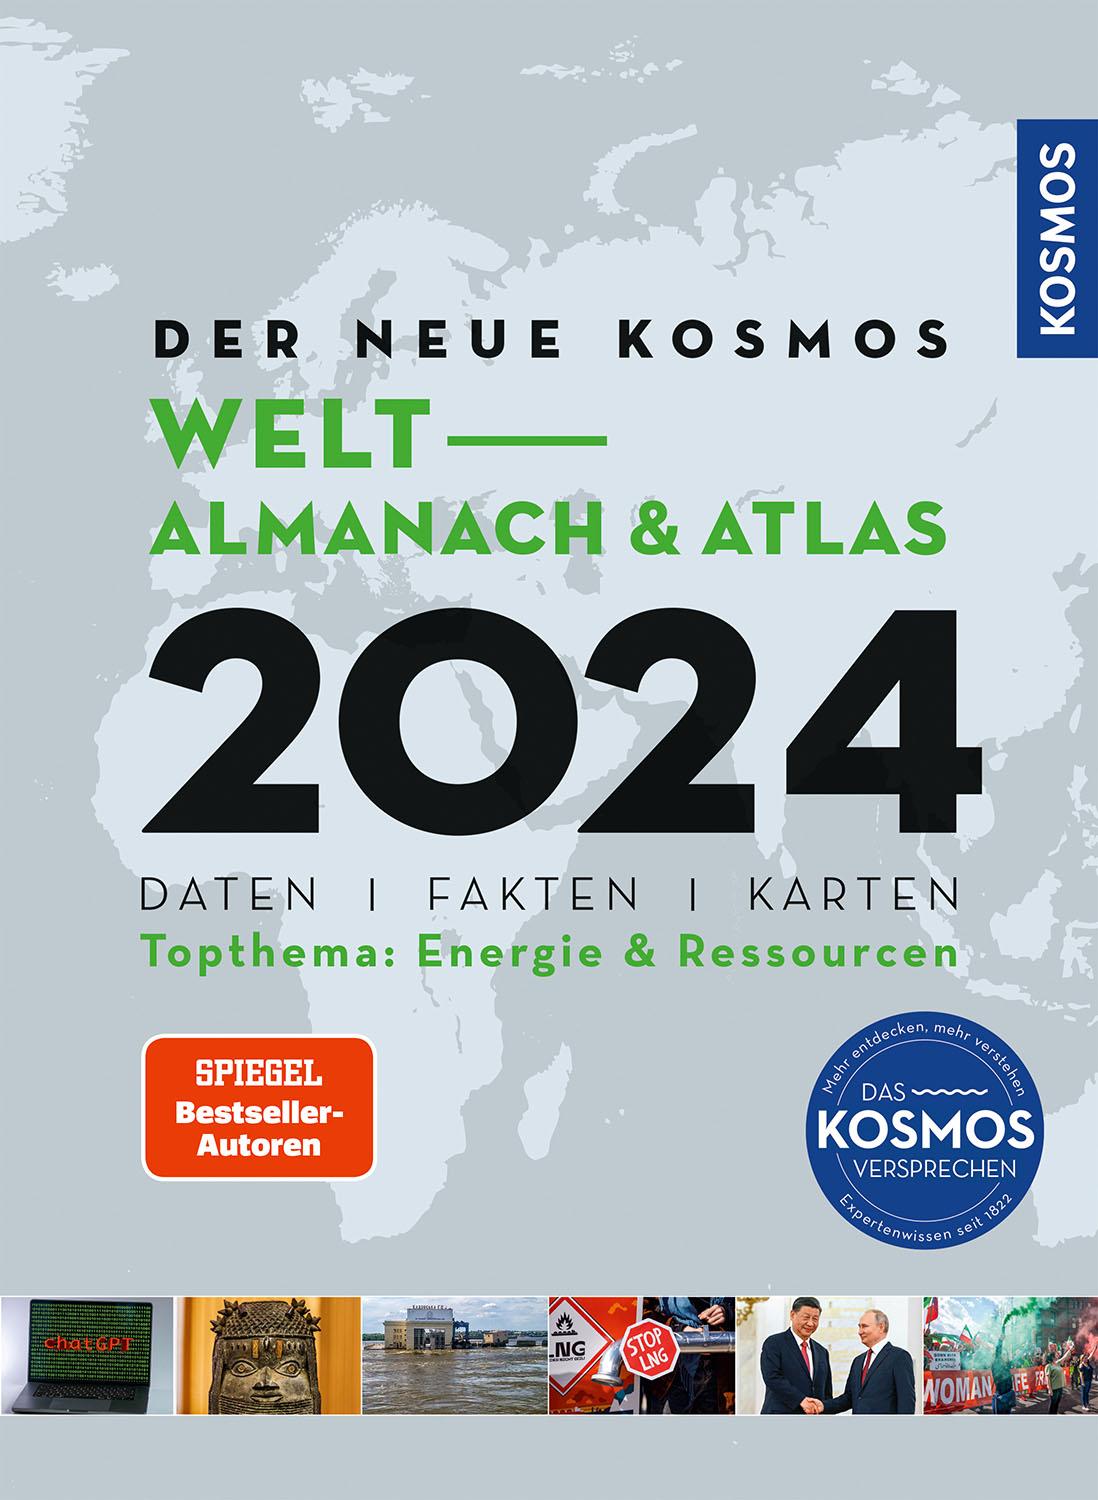 Der neue Kosmos Welt-Almanach & Atlas 2024: Daten. Fakten. Karten. Topthema: Energie & Ressourcen